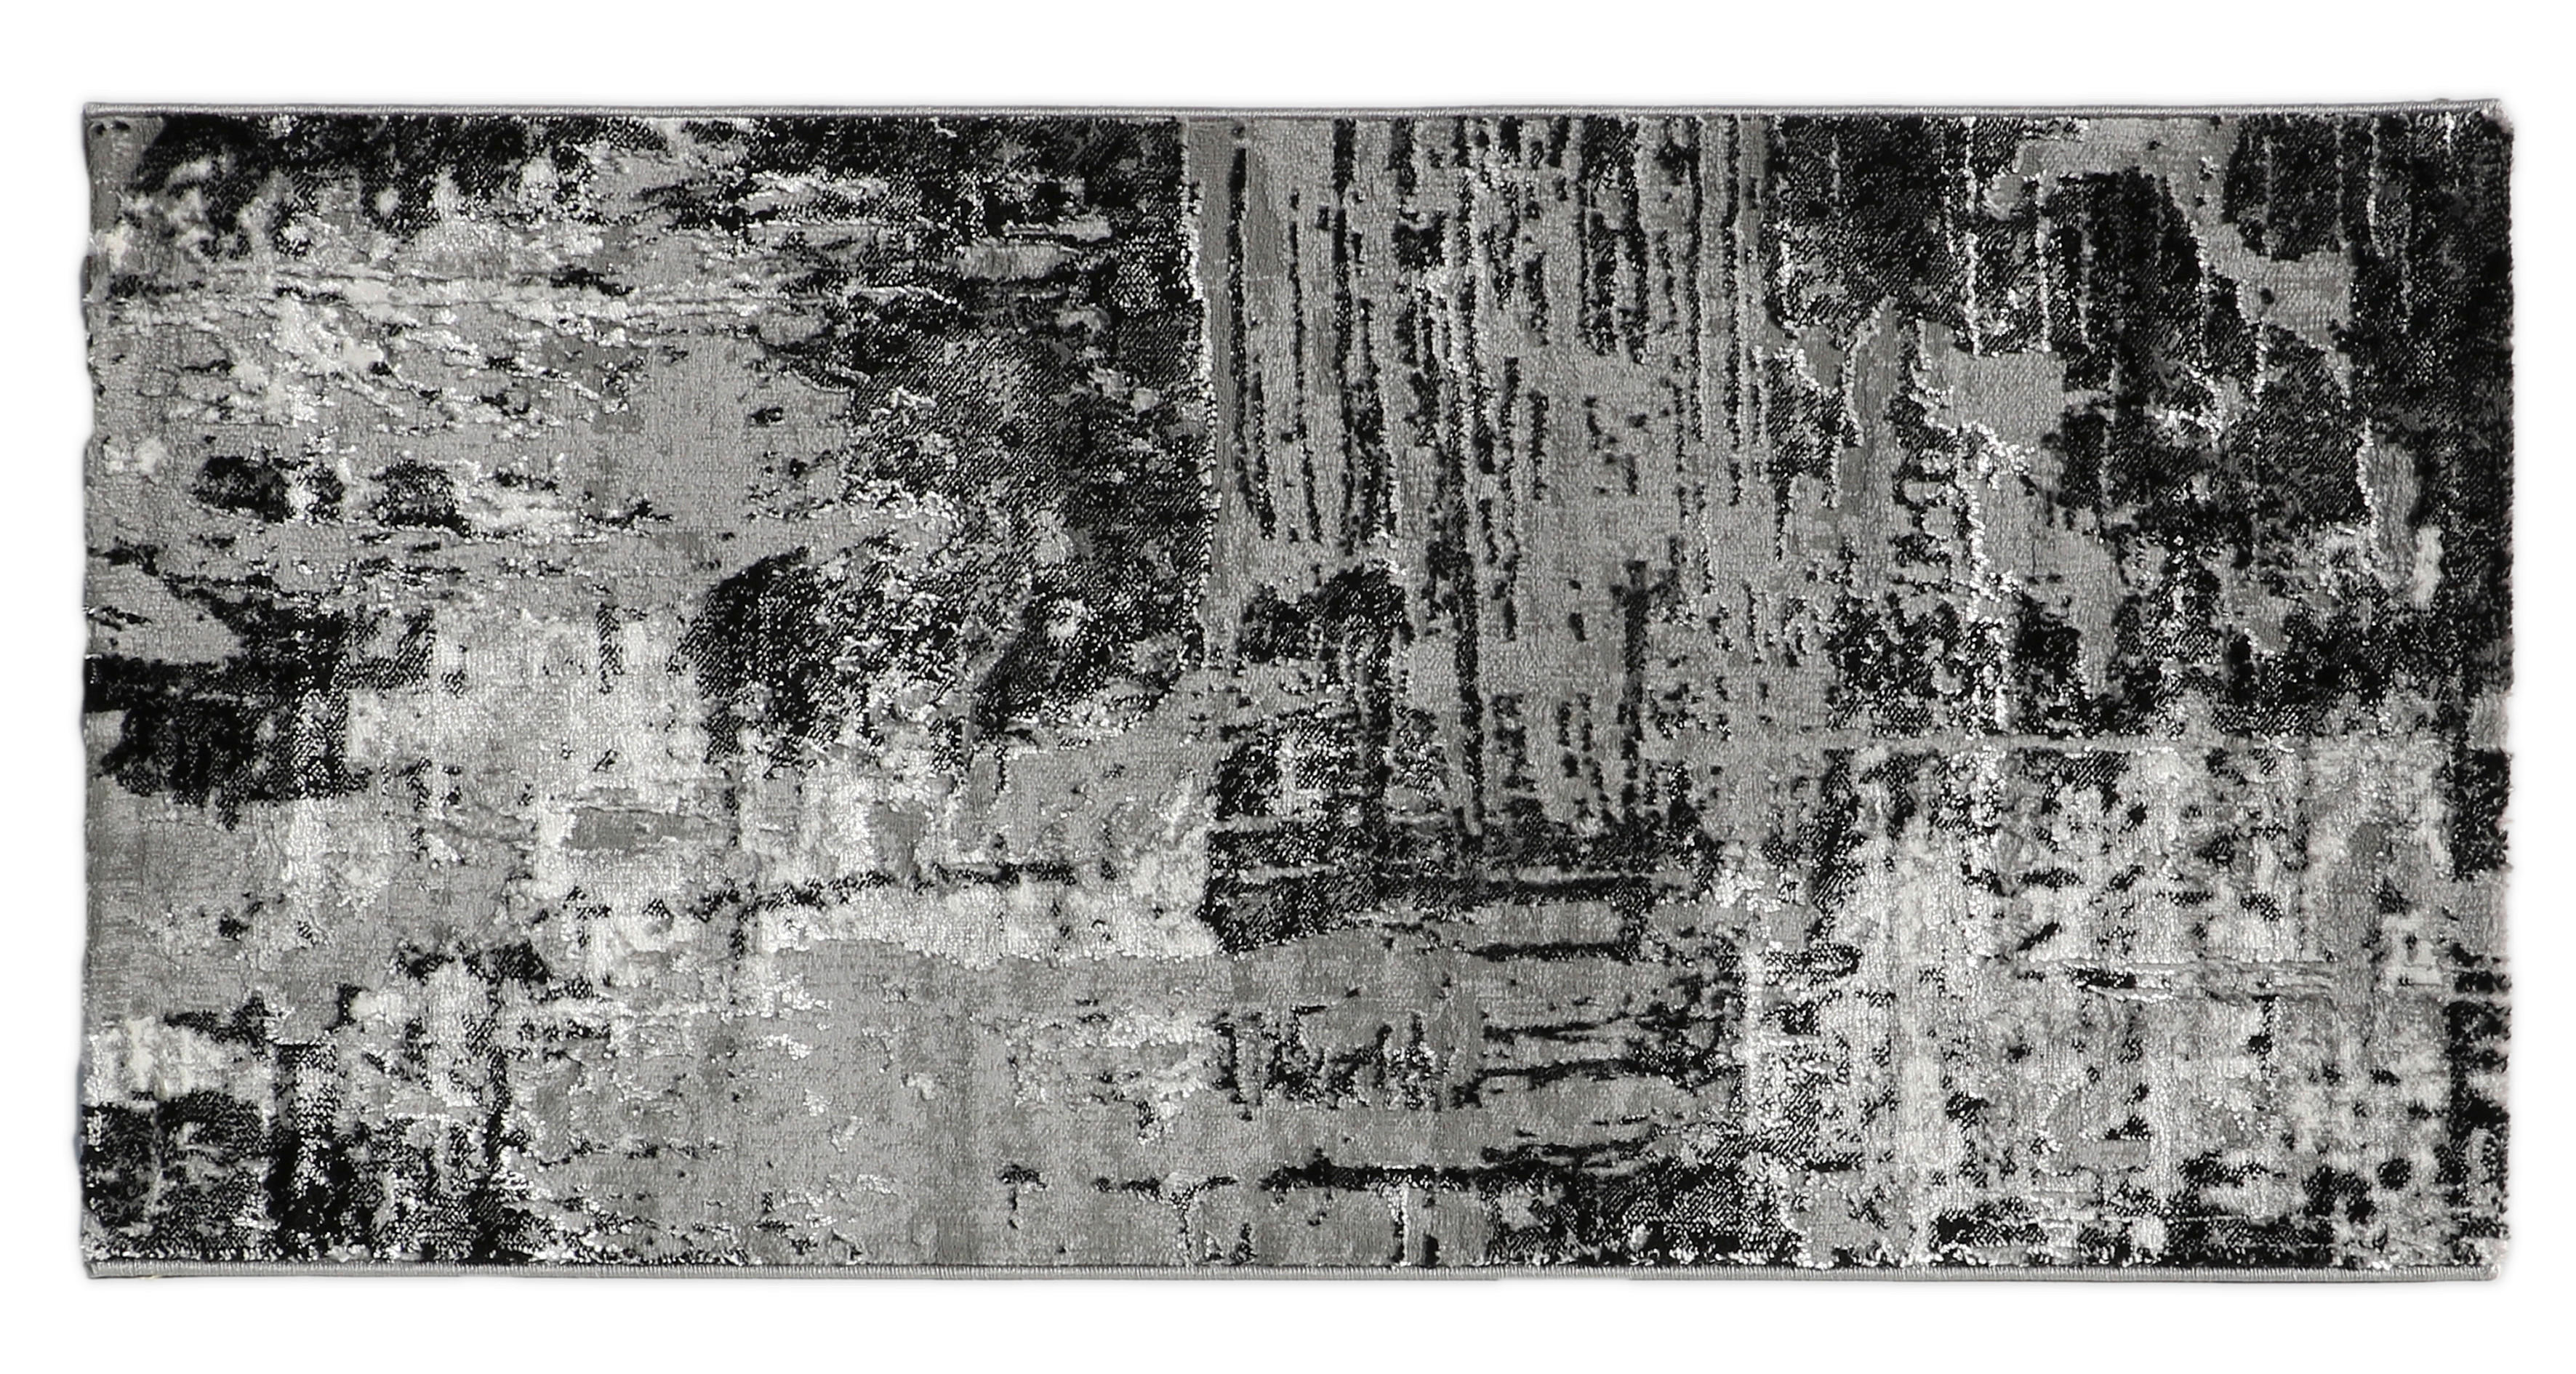 KOBEREC TKANÝ NA PLOCHO, 160/230 cm, šedá, černá - šedá,černá - textil